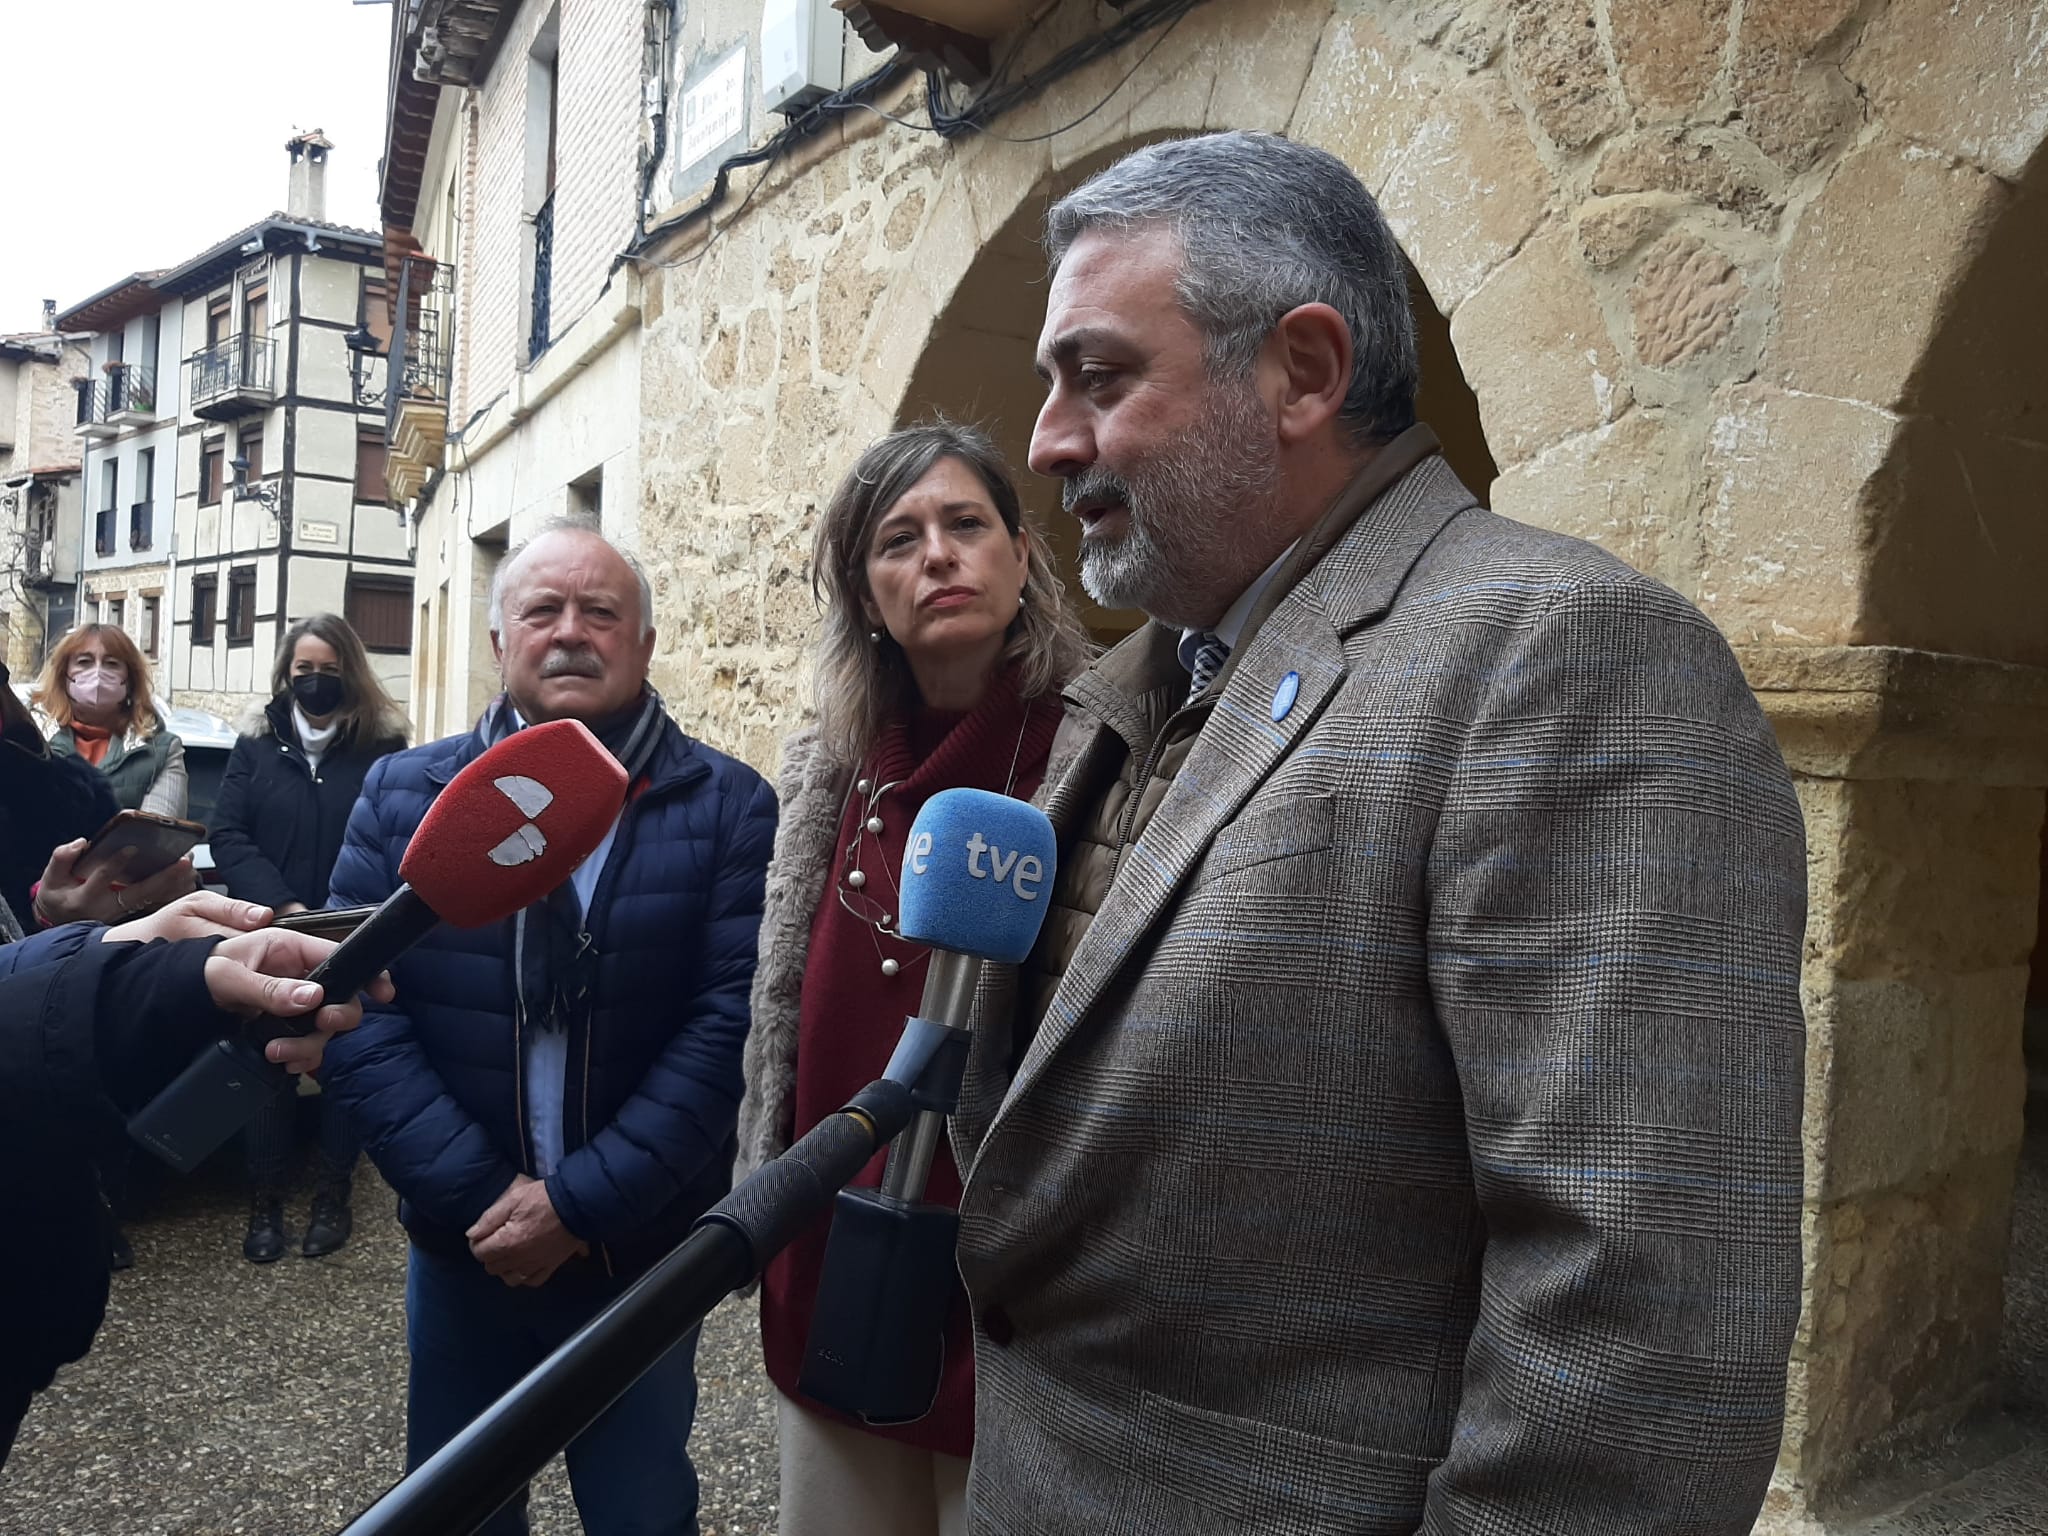 La Confederación Hidrográfica del Ebro tiene previstas cerca de 50 intervenciones para la recuperación de cauces en la provincia de Burgos tras las crecidas extraordinarias sufridas en la cuenca